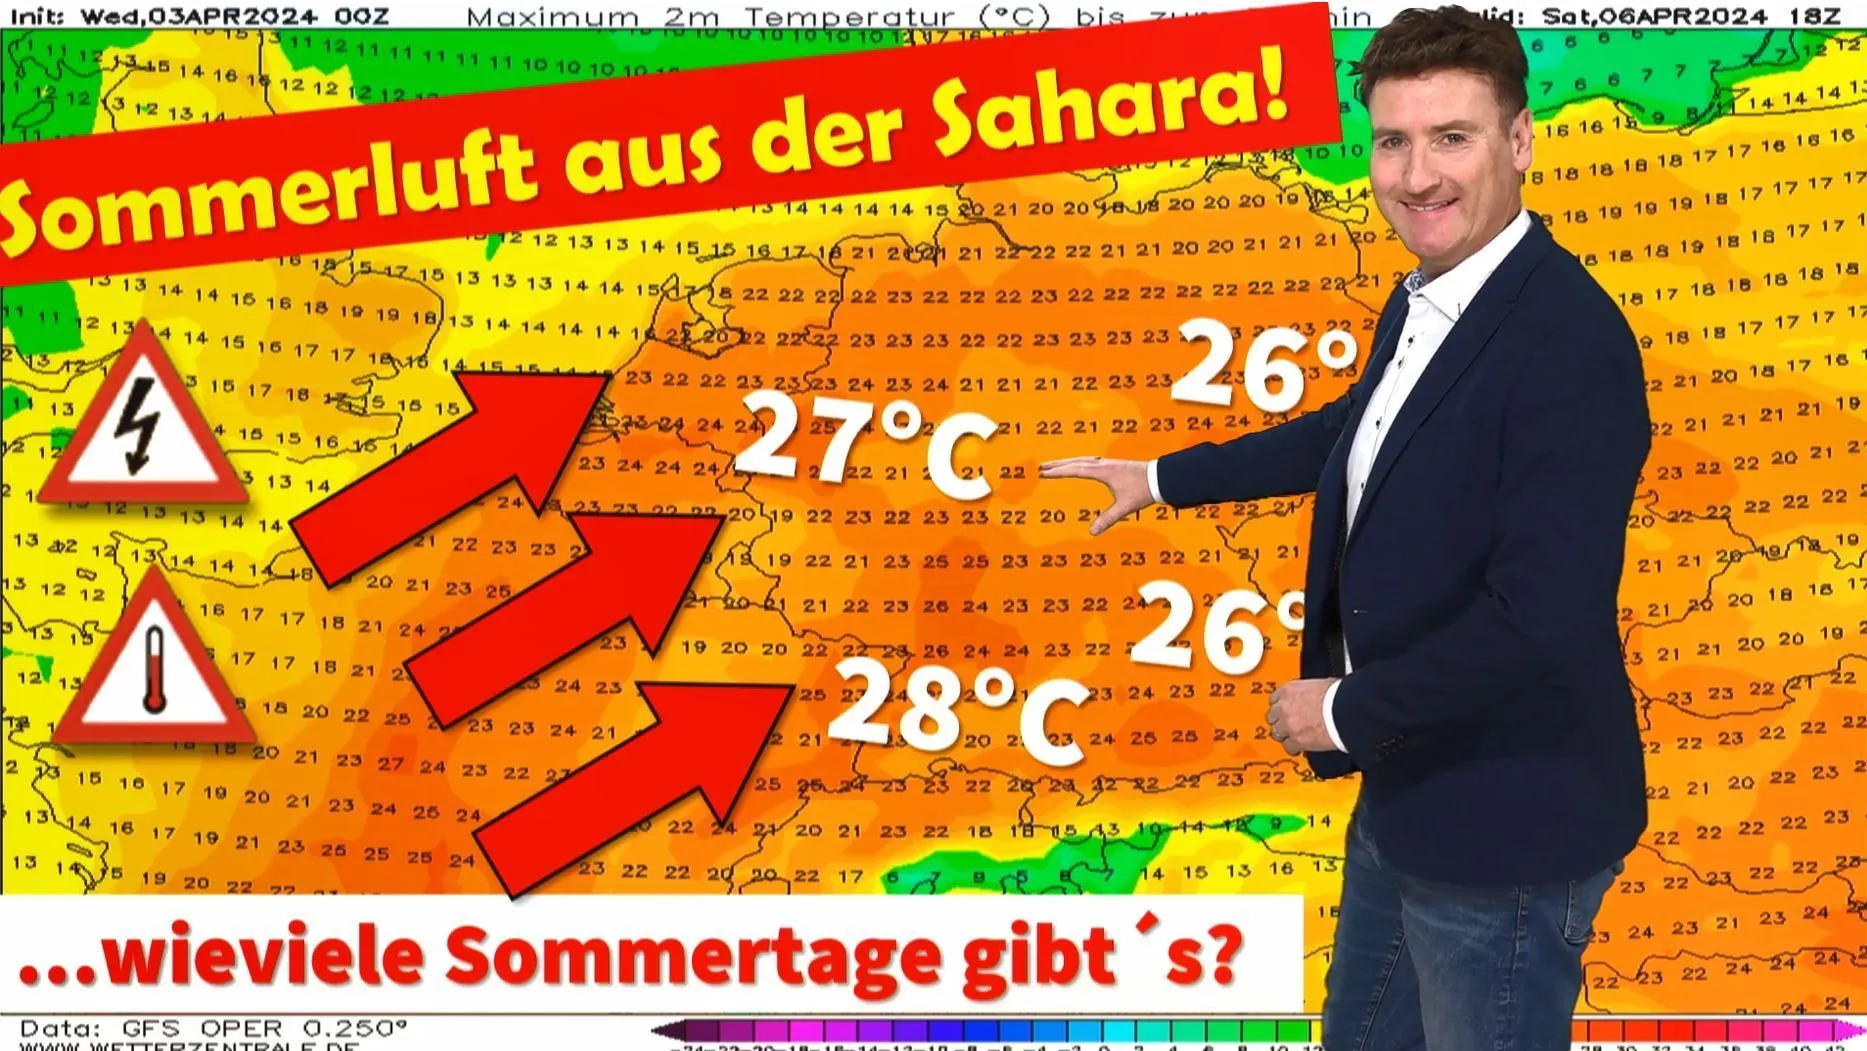 25-plussers weer vanaf zaterdag! Ongelooflijk: zomerweer begin april! Hoe lang blijft het warm en zomers in Duitsland?